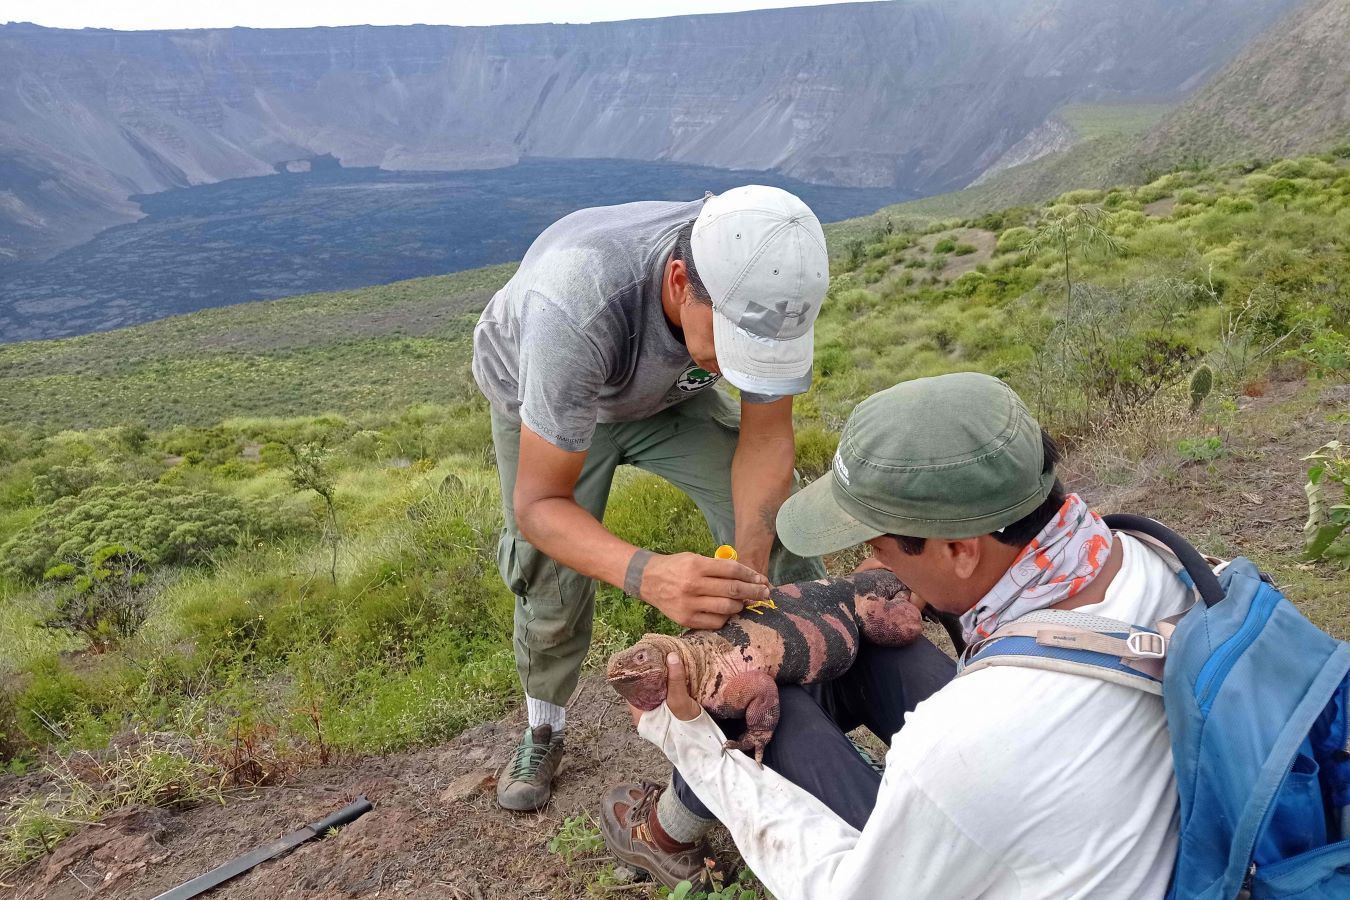 صغار الإجوانا الوردية المهددة بالانقراض تظهر لأول مرة على جزيرة جالاباجوس